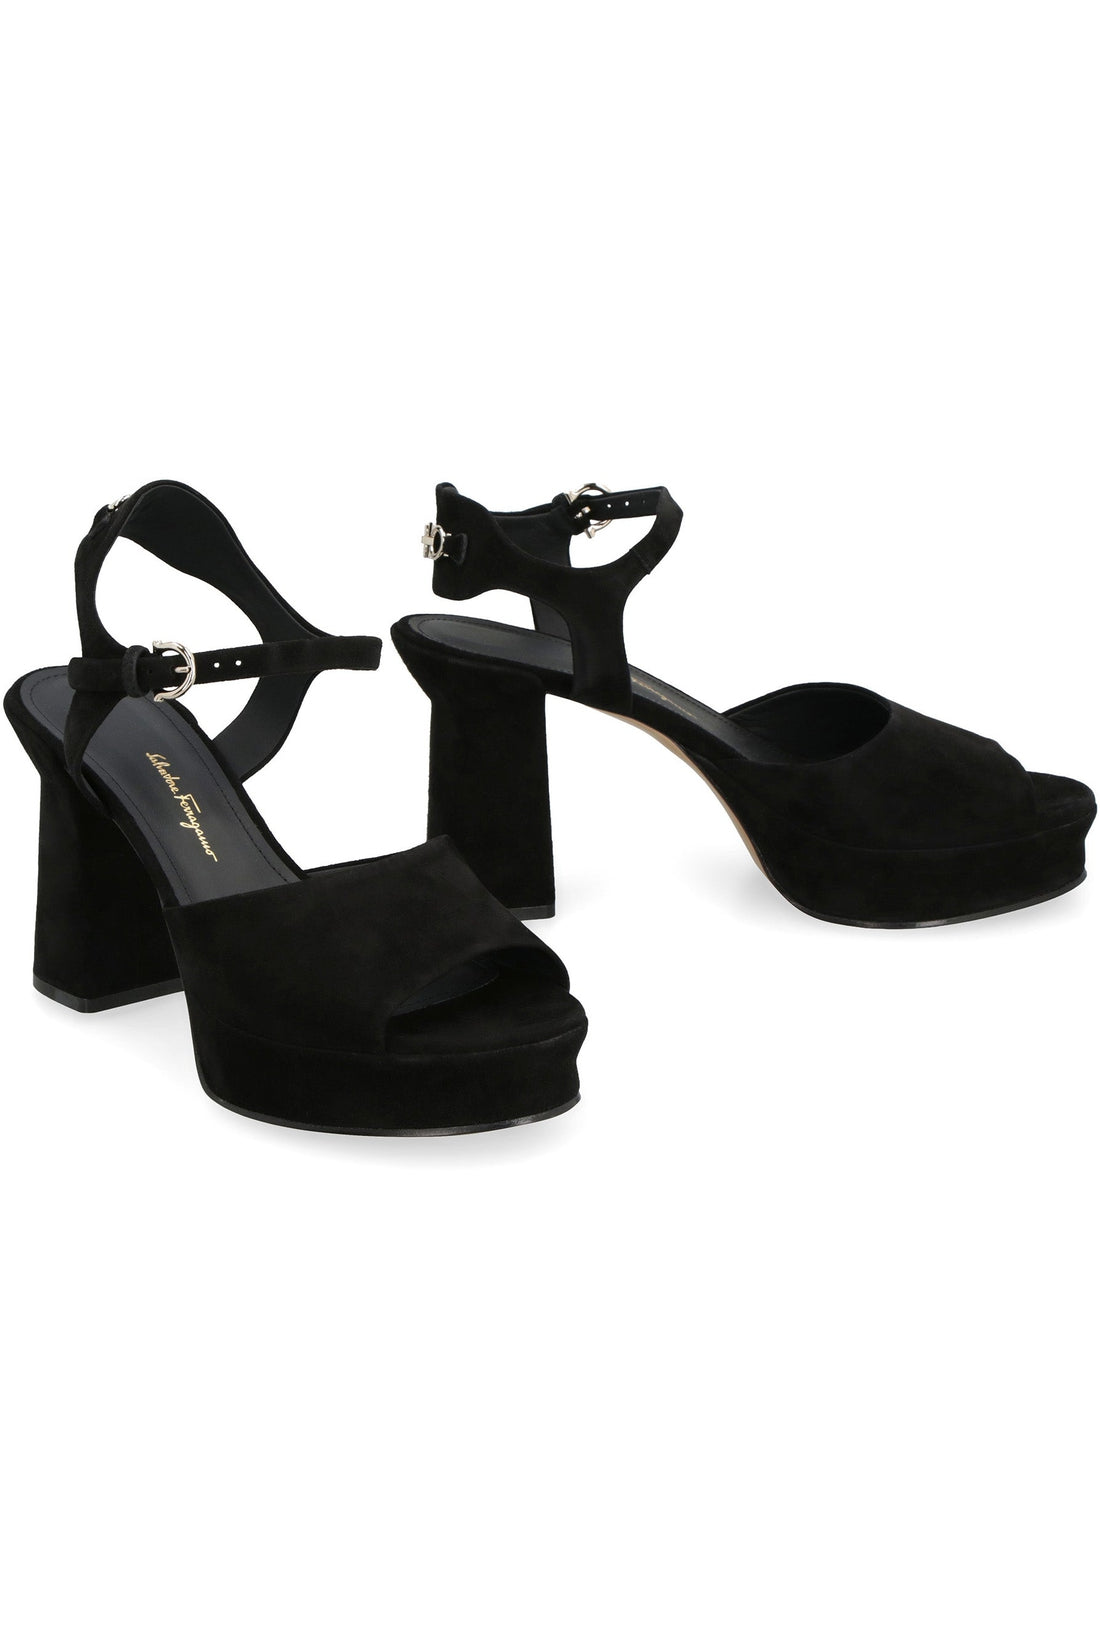 FERRAGAMO-OUTLET-SALE-Sasha leather platform sandals-ARCHIVIST